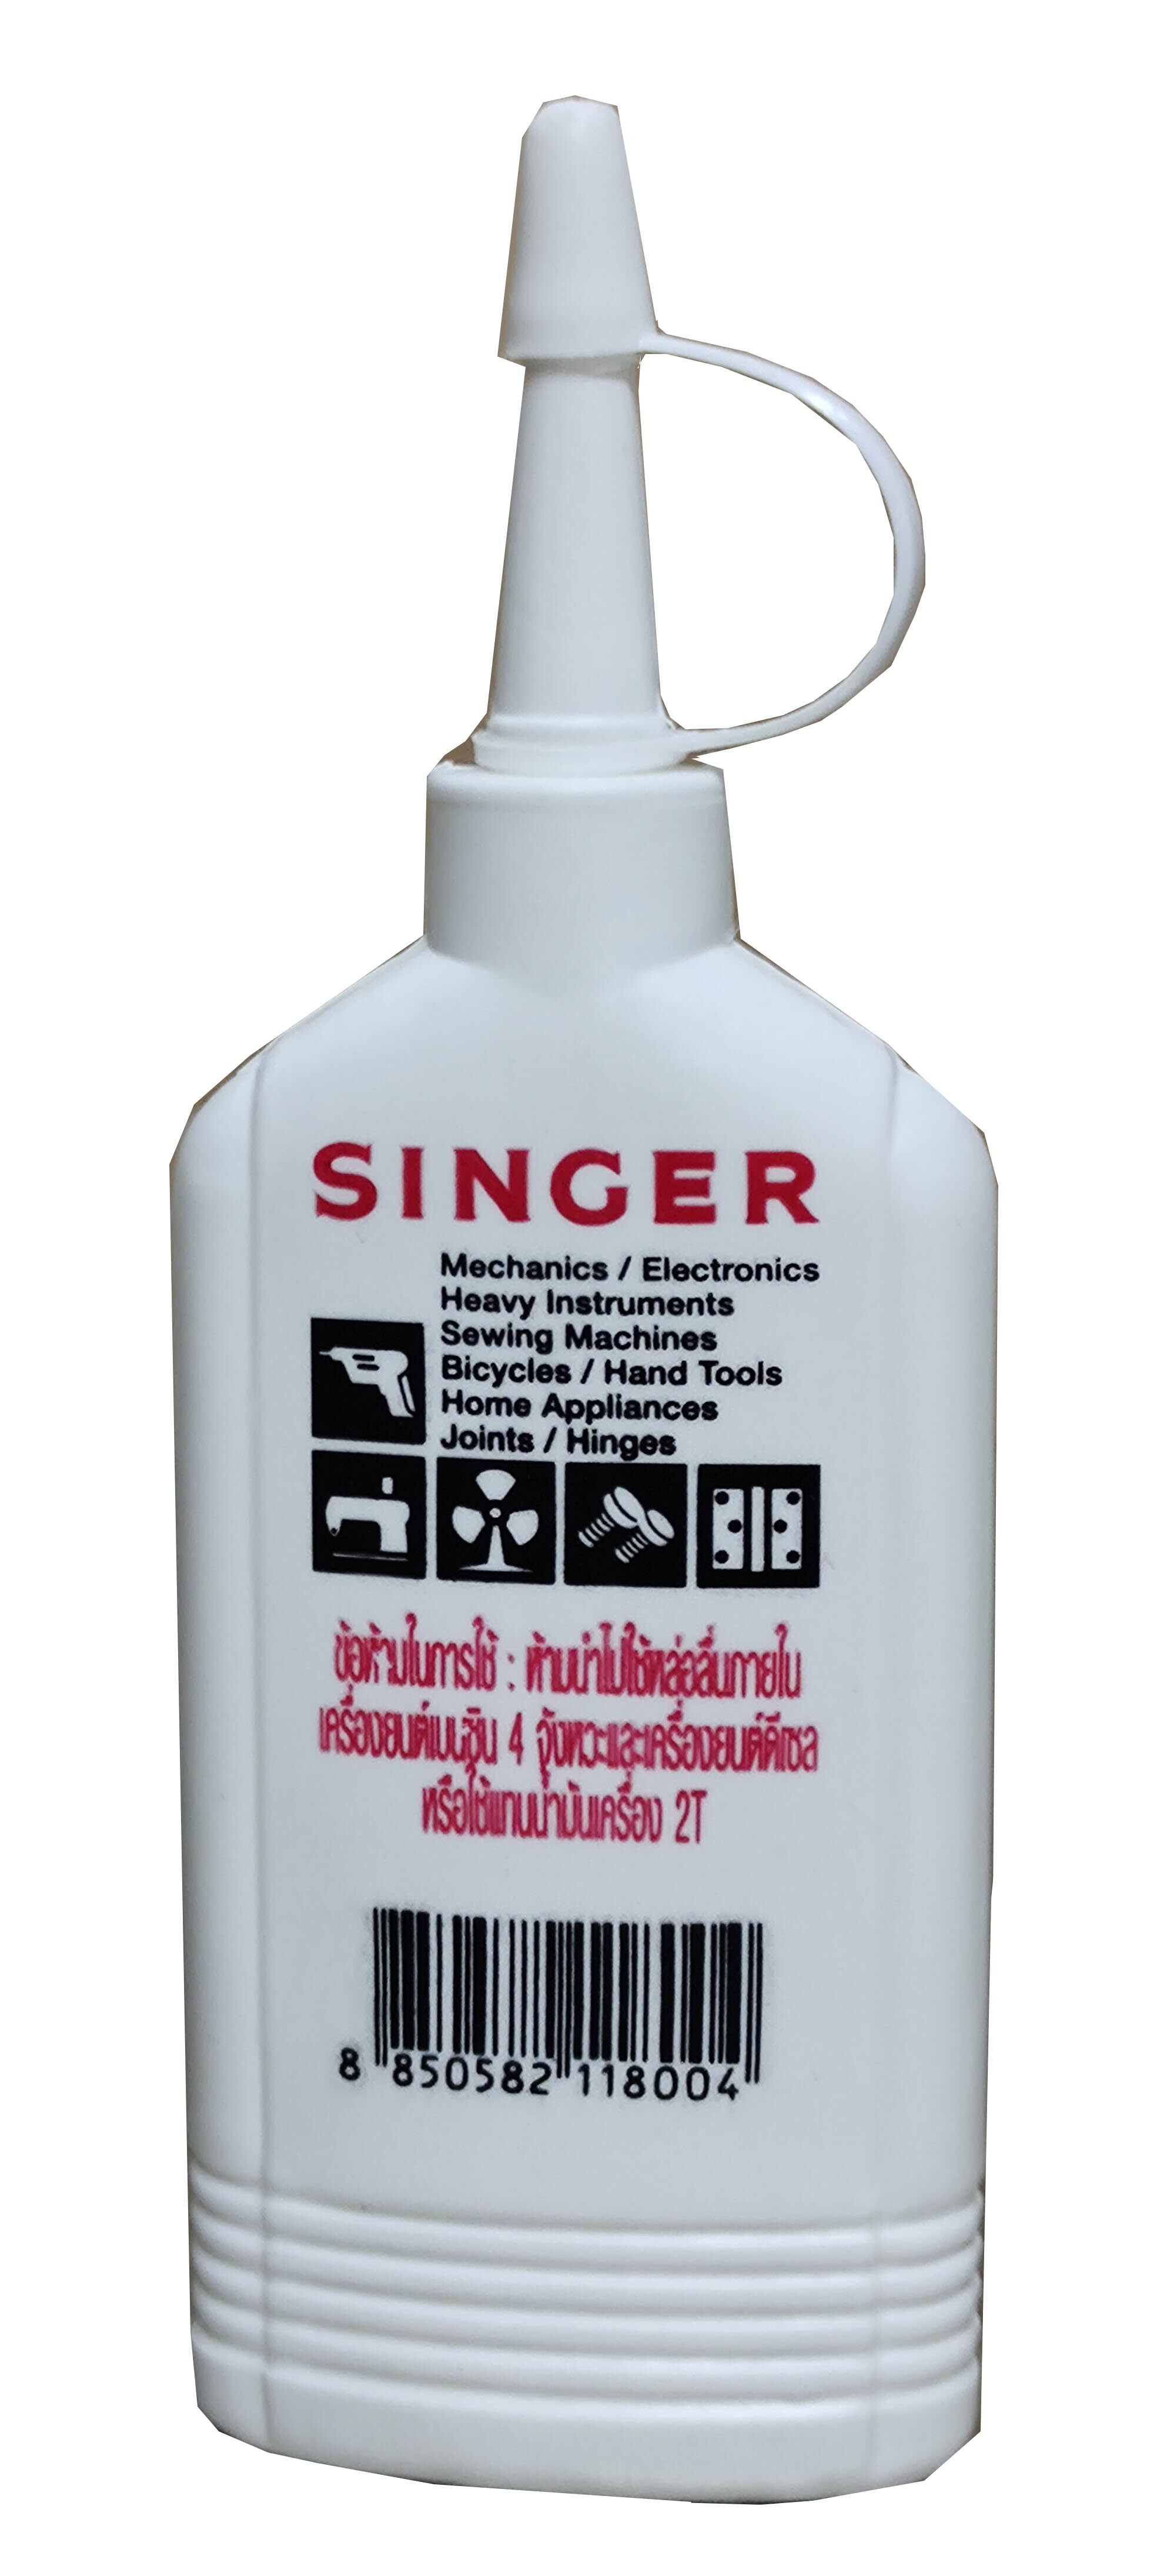 น้ำมันซิงเกอร์ น้ำมันจักร SINGER OIL ขนาด 900 / 130 / 80 CC ของแท้ 100 % น้ำมันอเนกประสงค์ น้ำมันจักรอุตสาหกรรม